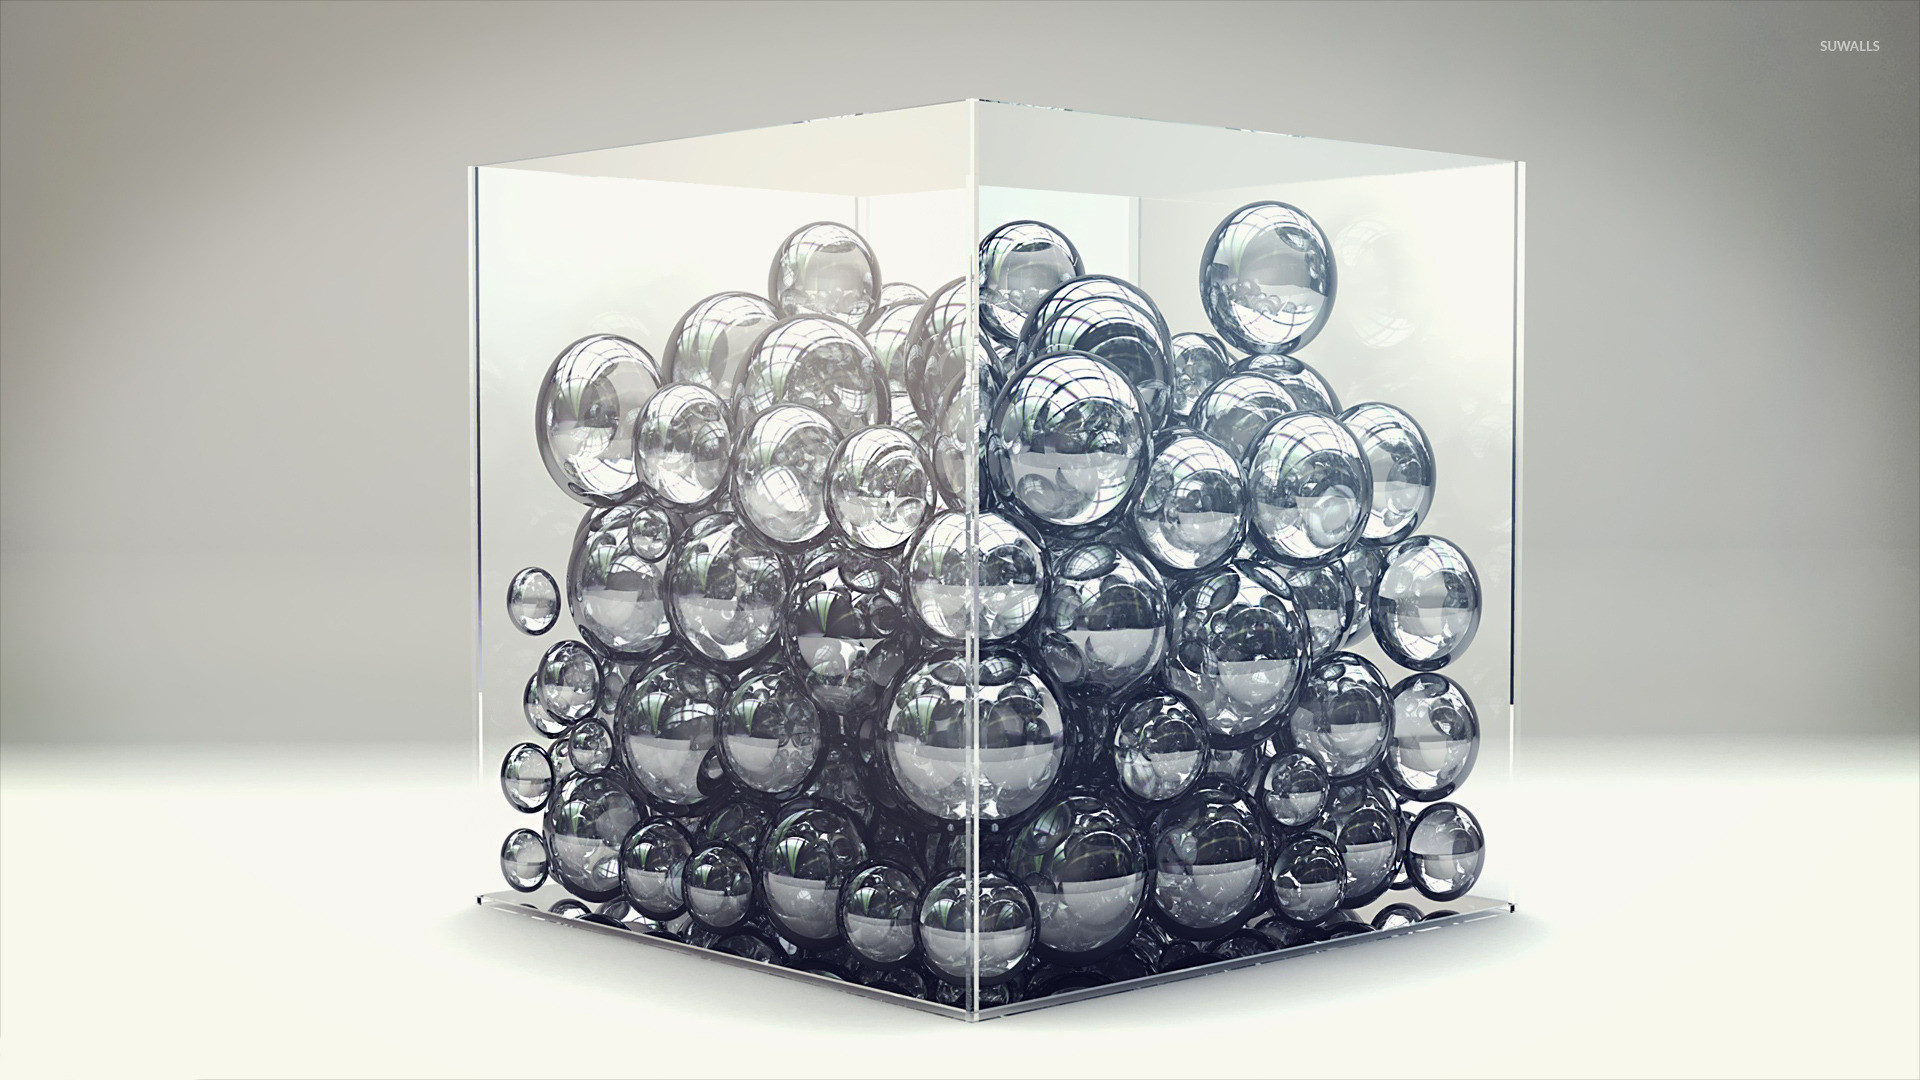 1920x1080 Bubbles in a cube wallpaper  jpg